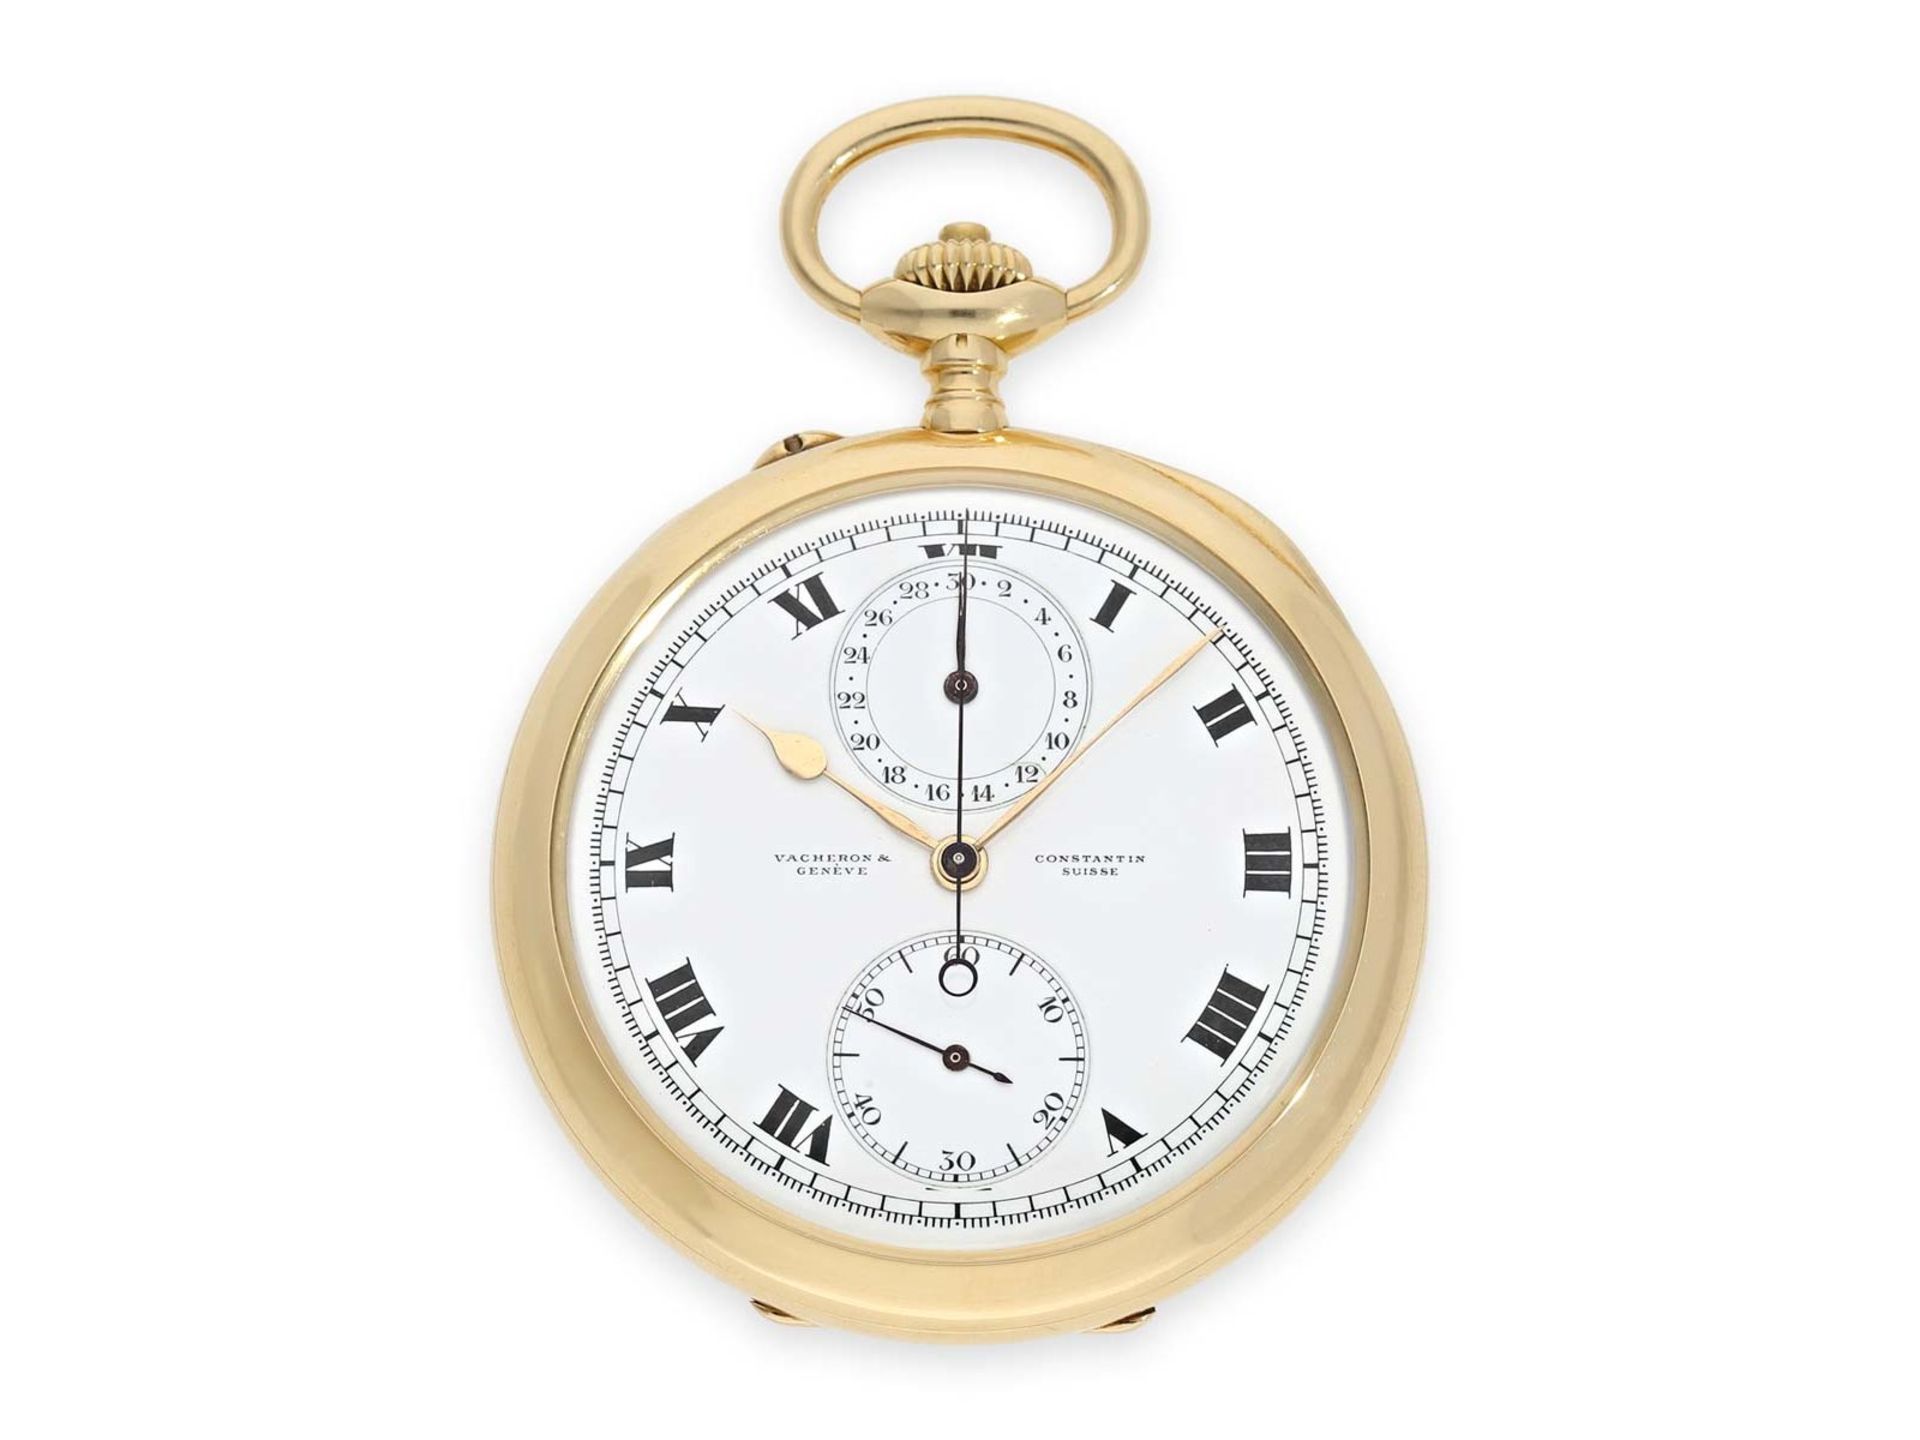 Taschenuhr: exquisites Vacheron & Constantin Ankerchronometer mit Chronograph und Register, nahezu n - Bild 2 aus 11